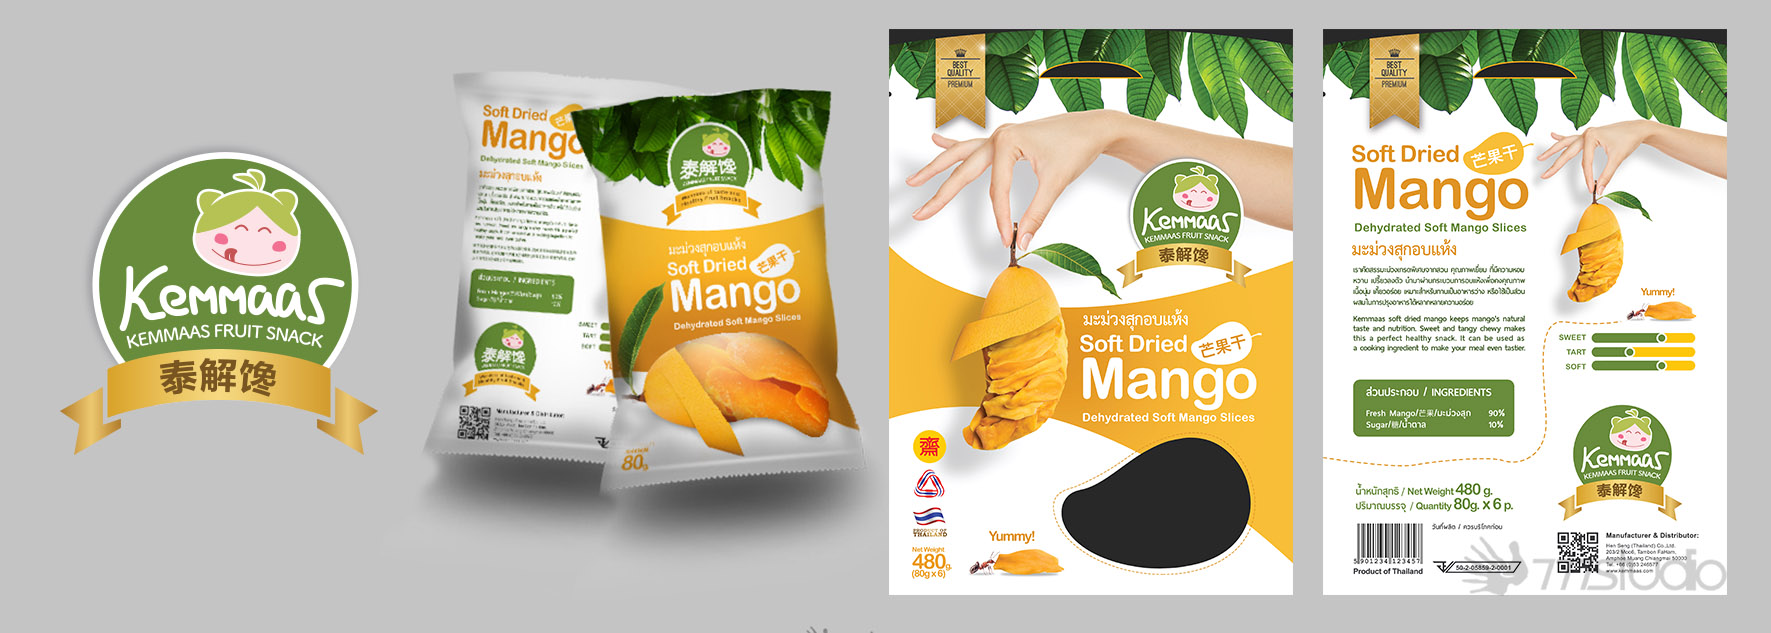 Chiang Mai Packaging Branding Design Branding design